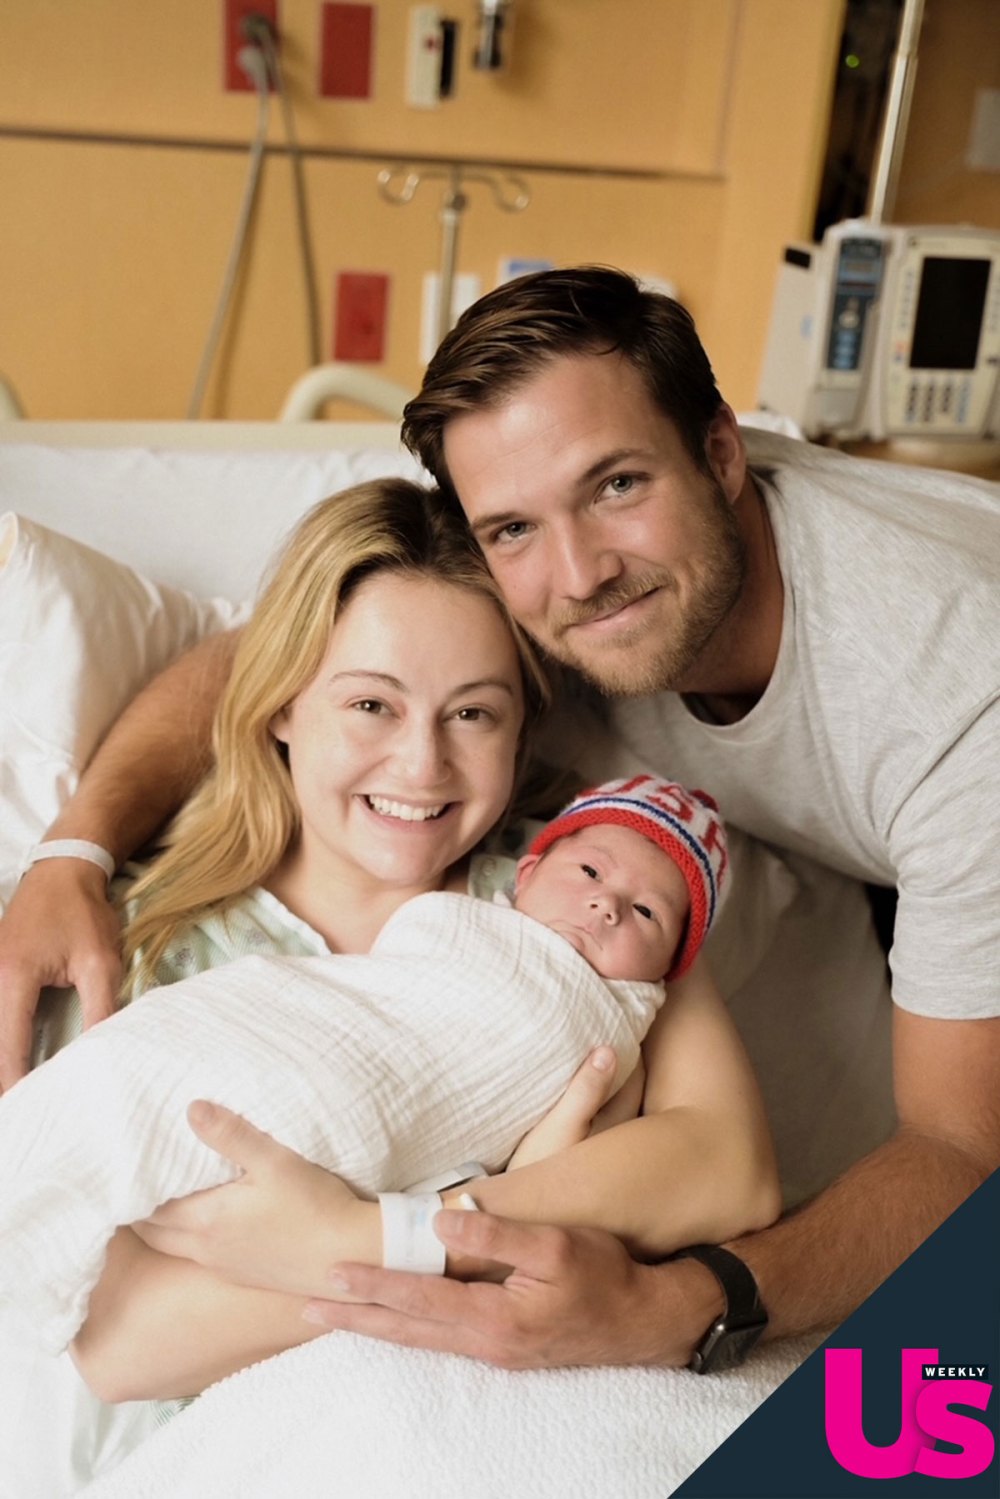 Bachelor Nation Jordan Kimball and Wife Christina Welcome 1st Baby Together